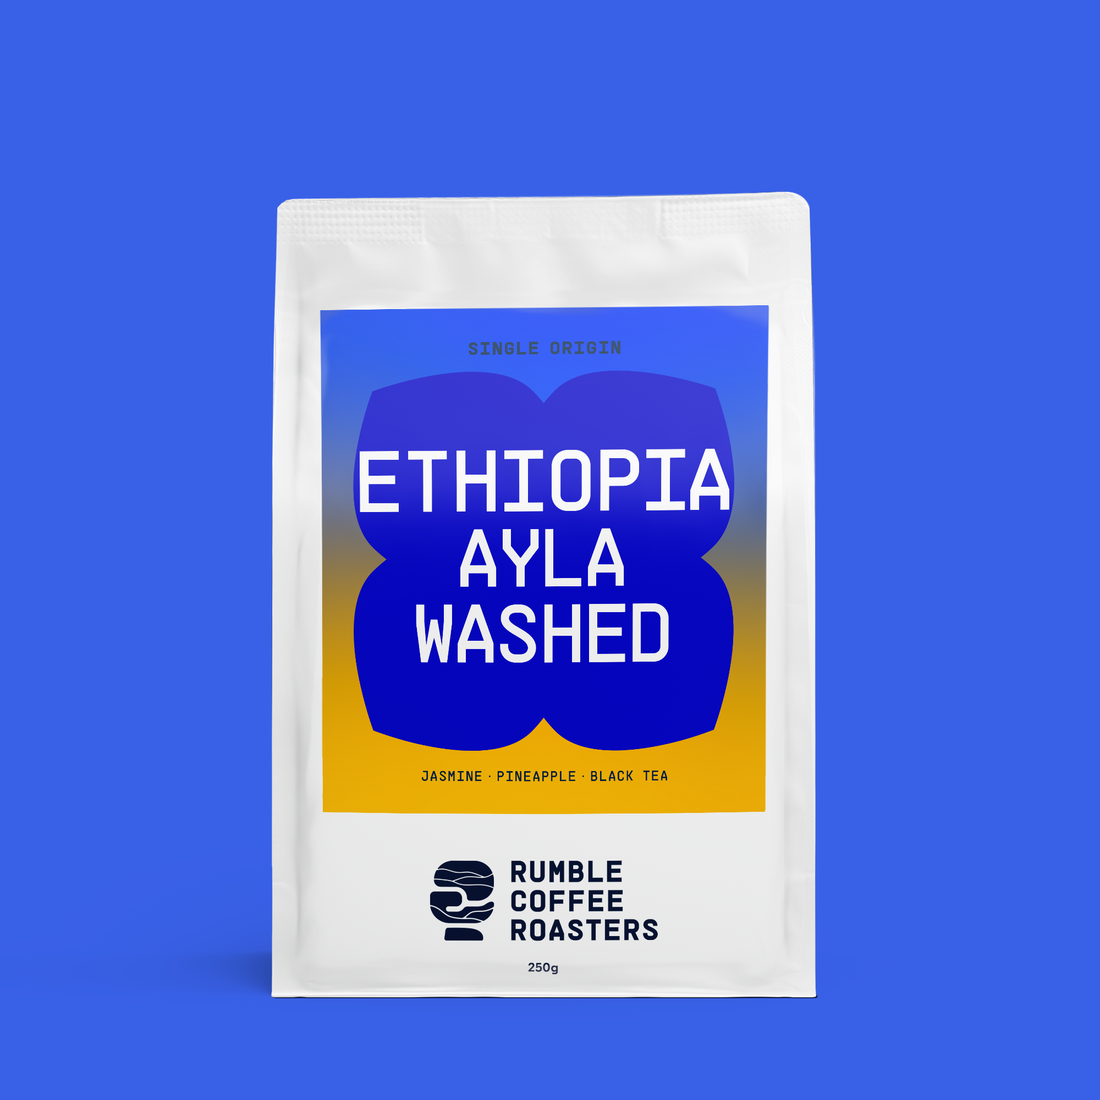 Ethiopia Ayla Washed Filter